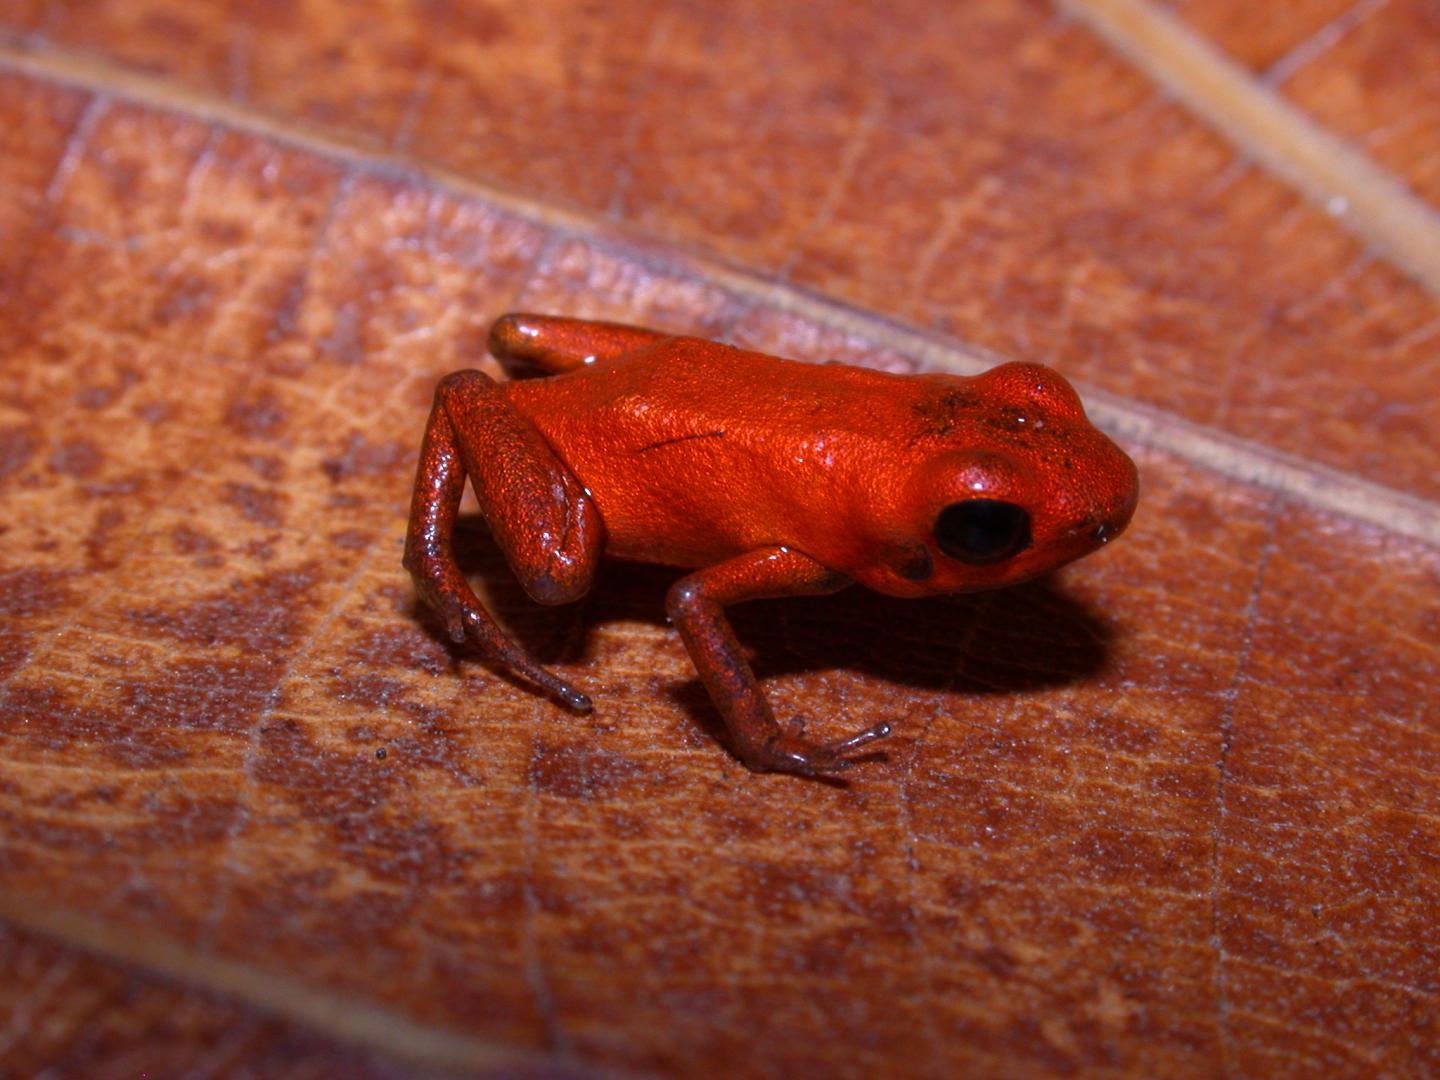 La grenouille Andinobates geminisae a pour particularité d’avoir une peau uniformément orange. © Cesar Jaramillo, STRI